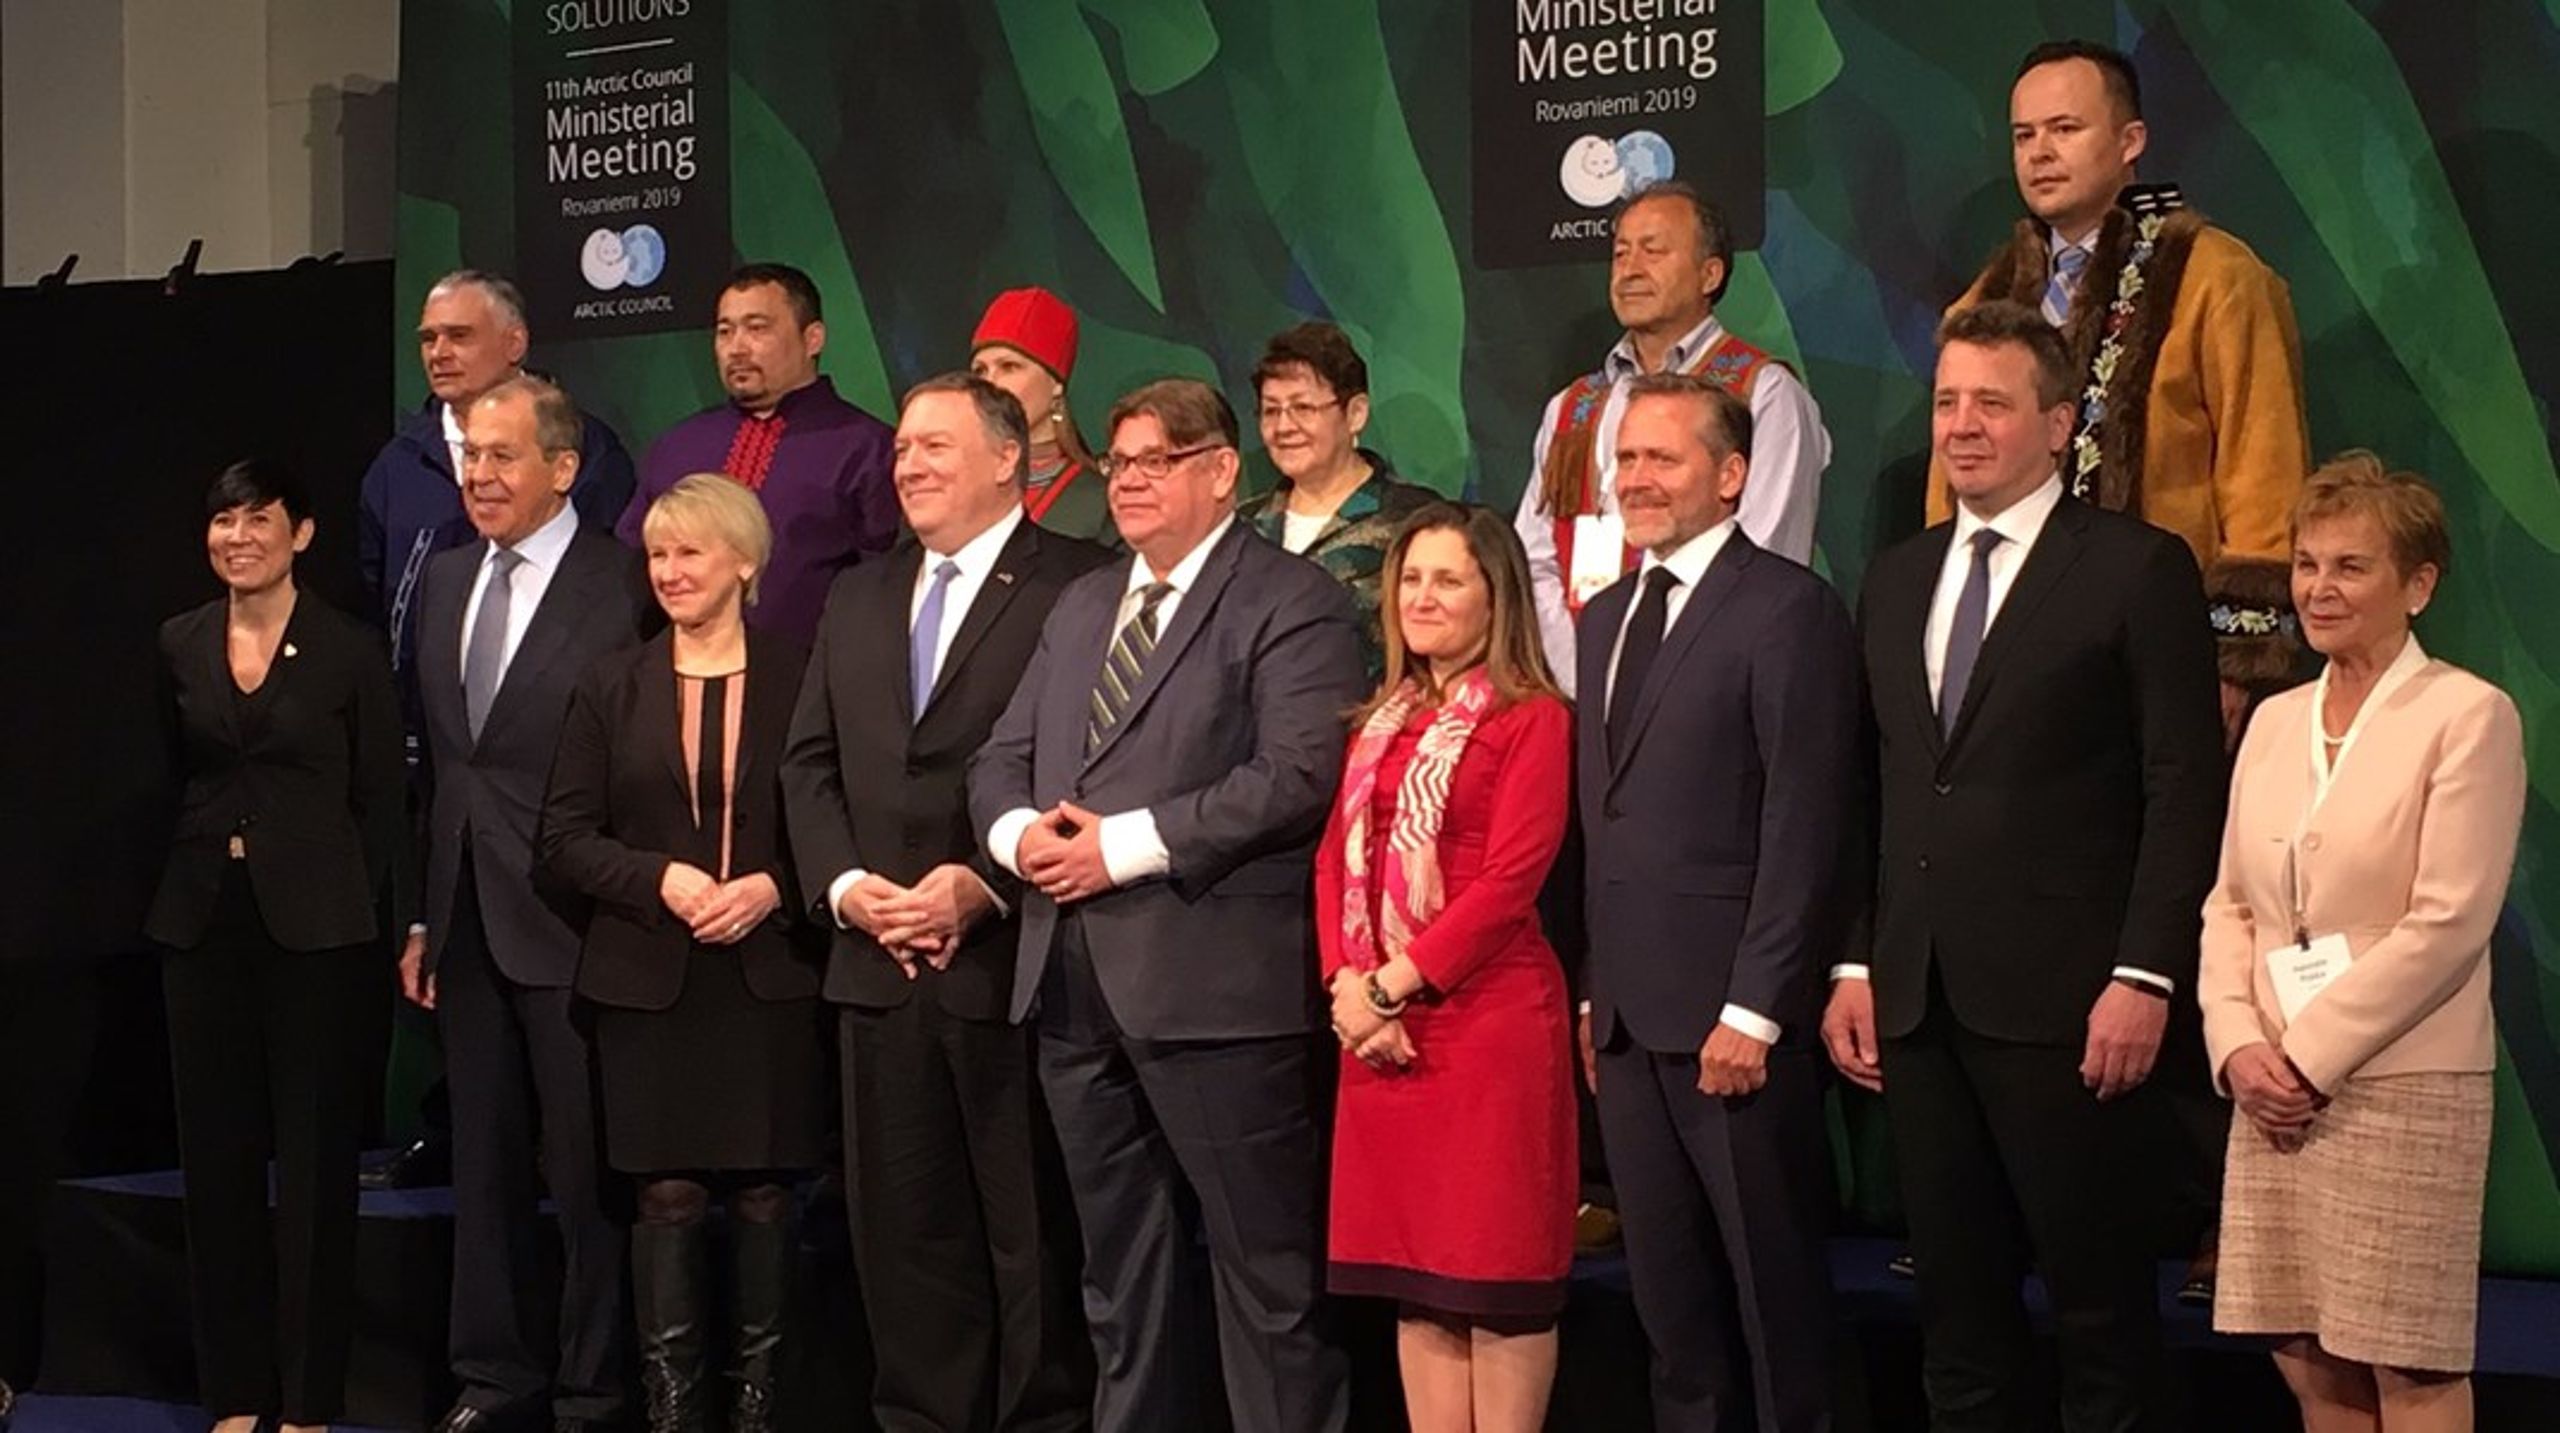 Familiefoto af de arktiske landes udenrigsministre fra Arktisk Råds ministermøde i Finland i maj 2019.